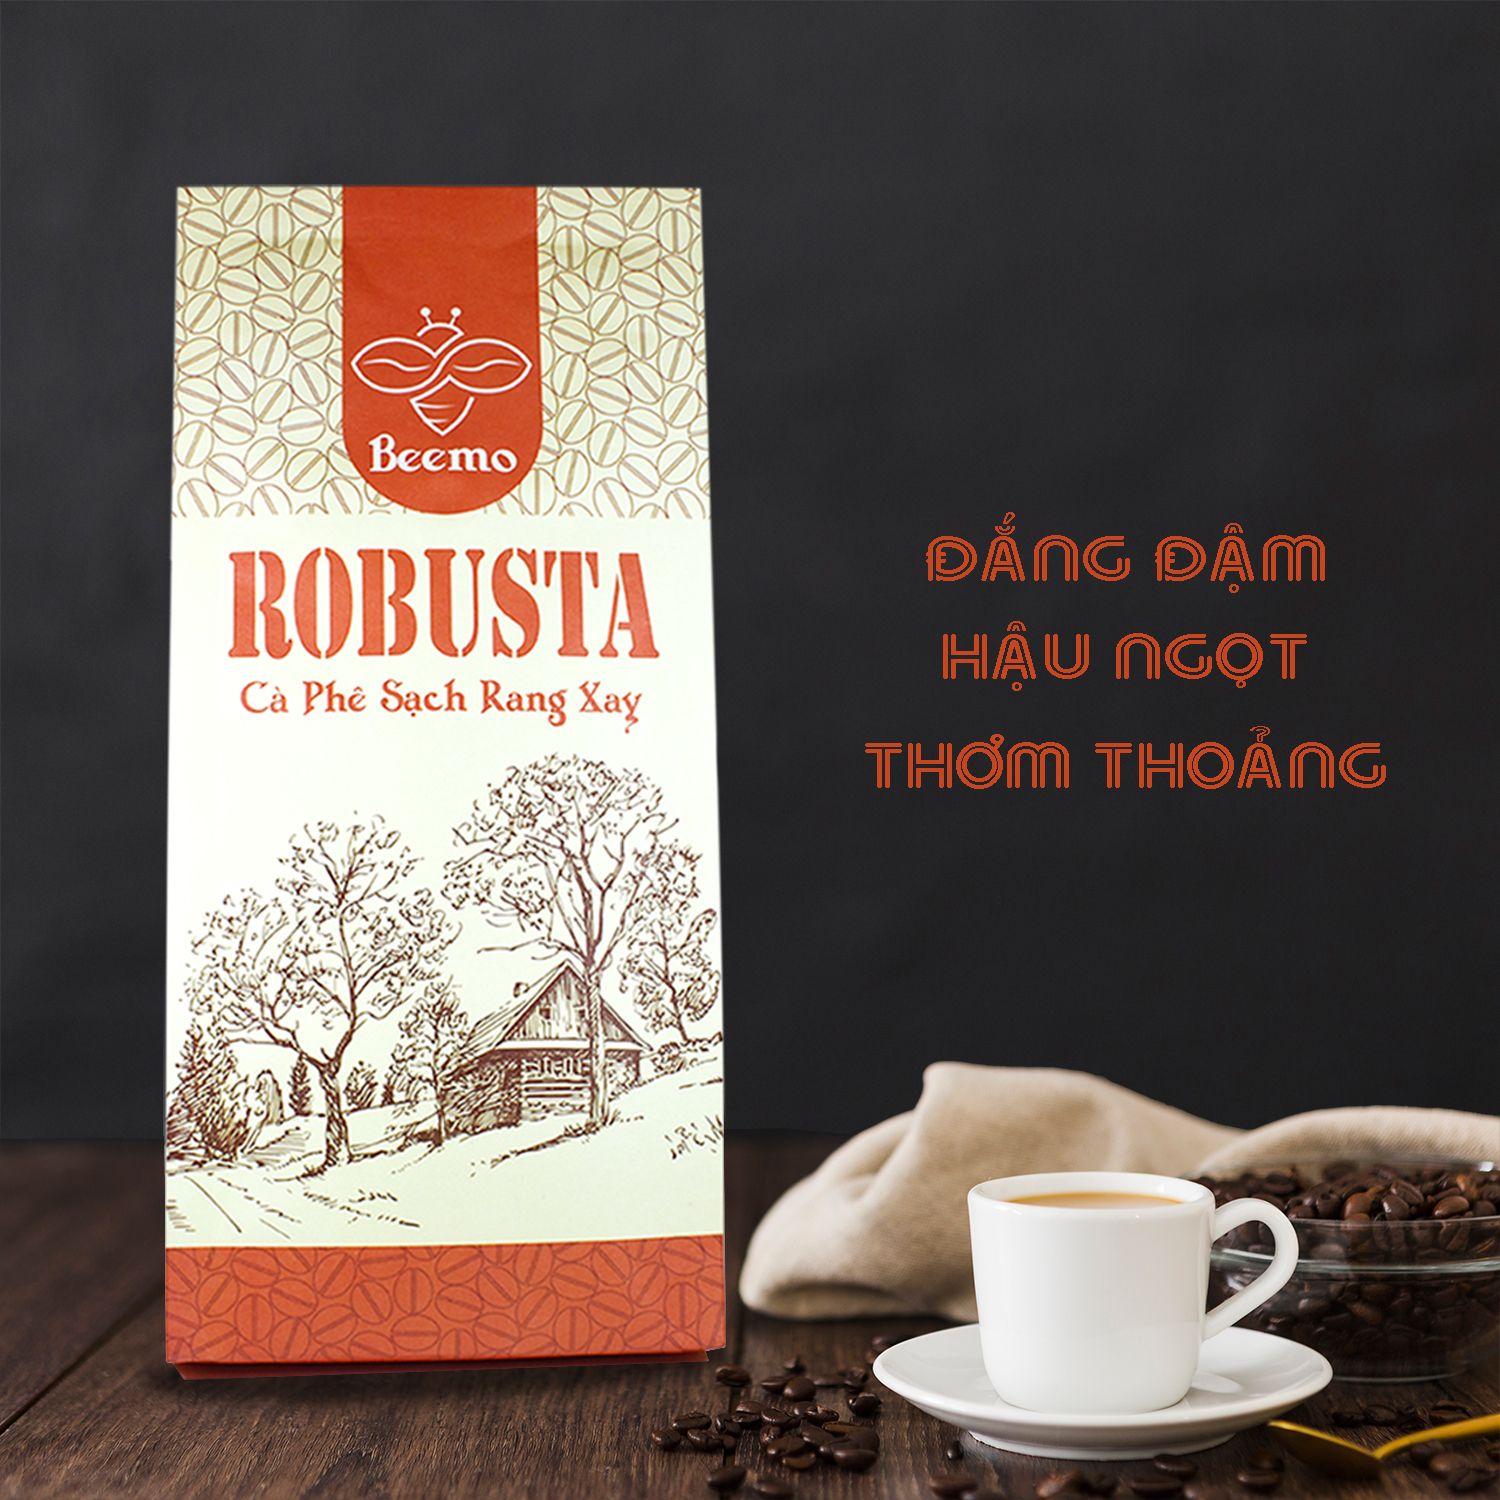 Cà phê nguyên chất Robusta, cafe mộc rang xay Beemo 500g - Đắng đậm, thơm thoảng, hậu vị ngọt